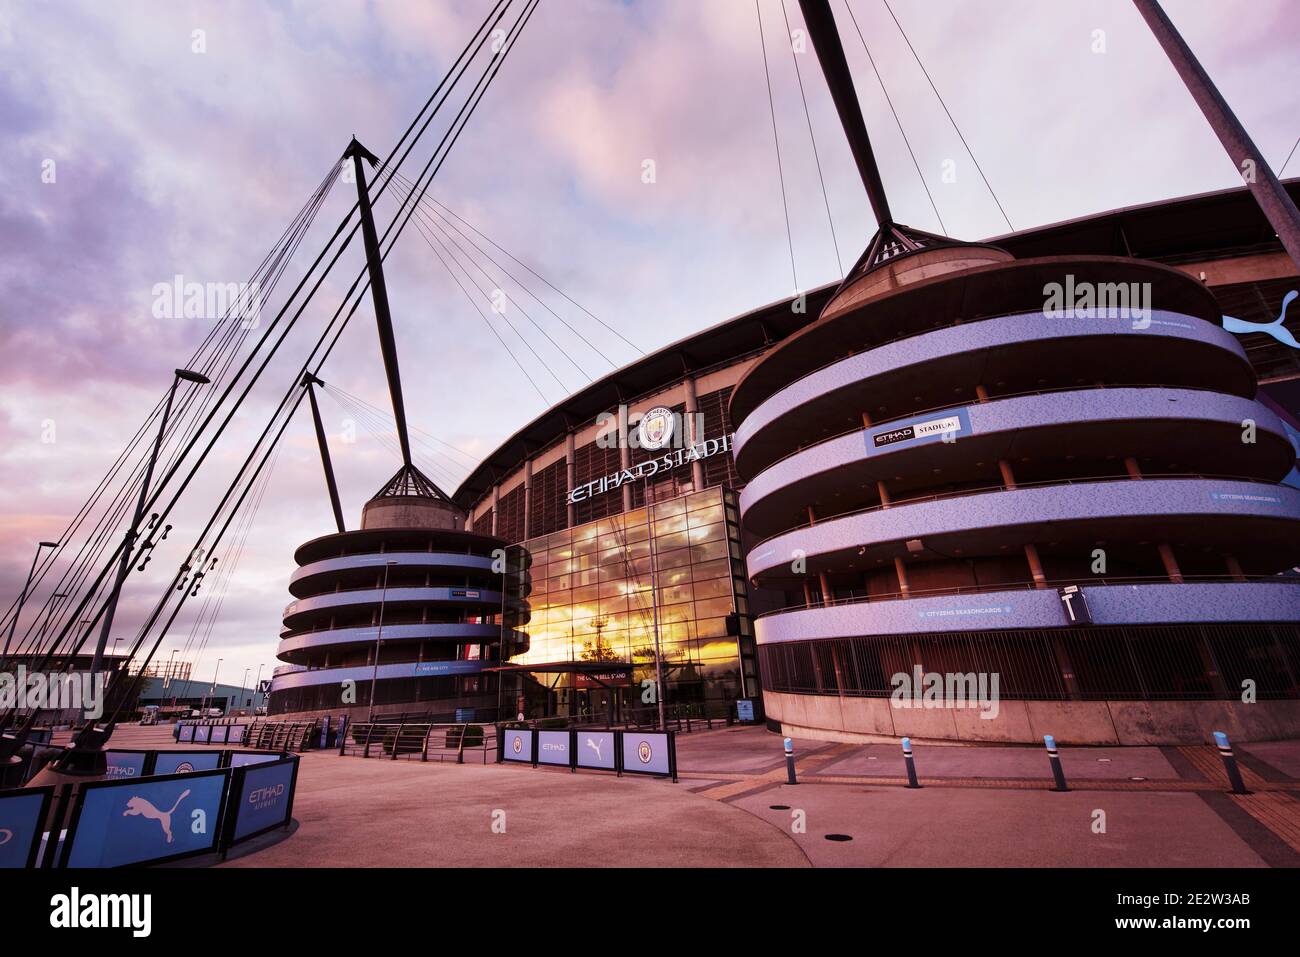 Etihad Stadium. Manchester, UK. Stock Photo